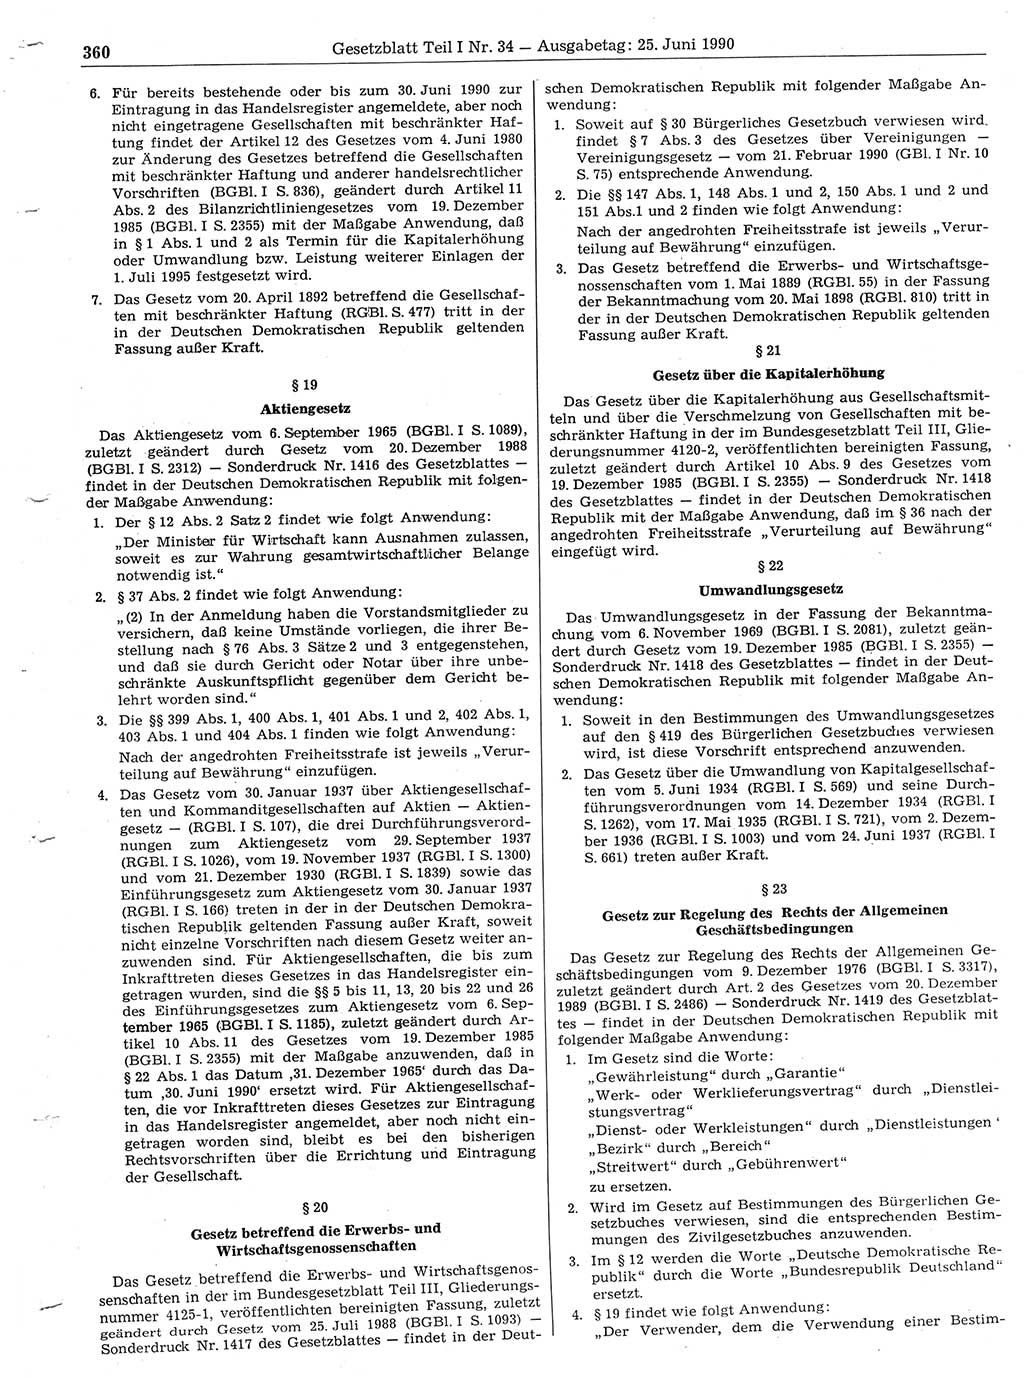 Gesetzblatt (GBl.) der Deutschen Demokratischen Republik (DDR) Teil Ⅰ 1990, Seite 360 (GBl. DDR Ⅰ 1990, S. 360)